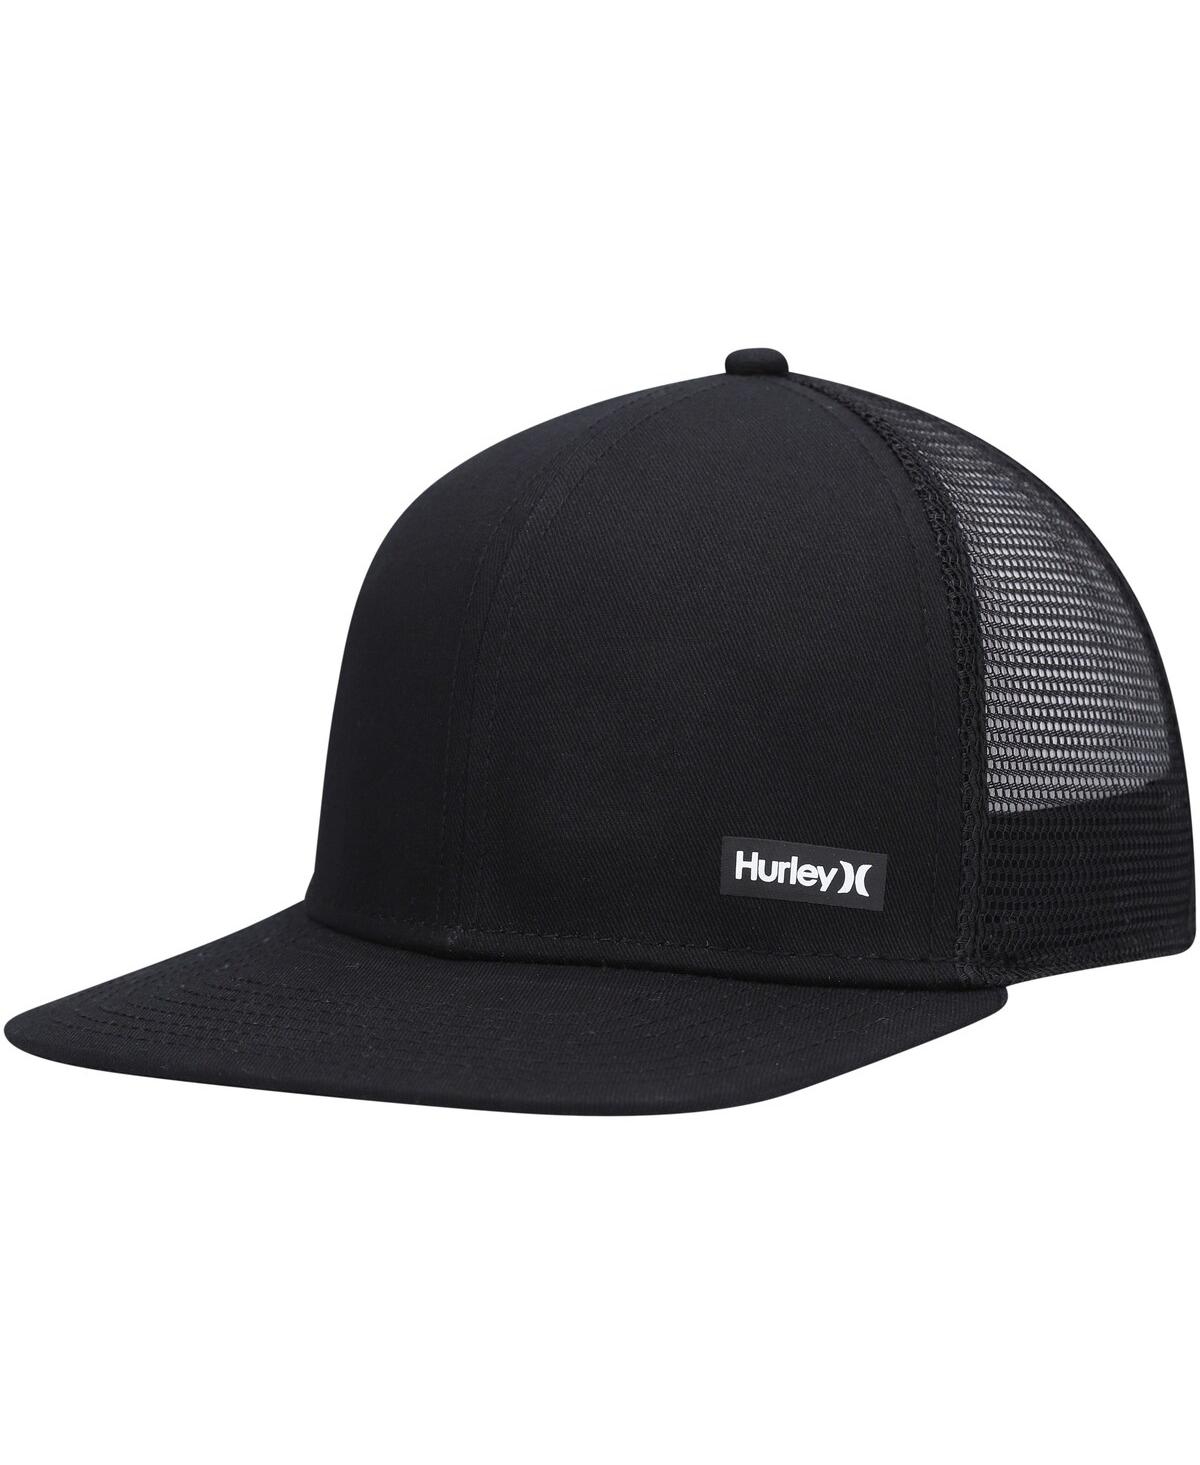 Men's Hurley Black Supply Trucker Snapback Hat - Black